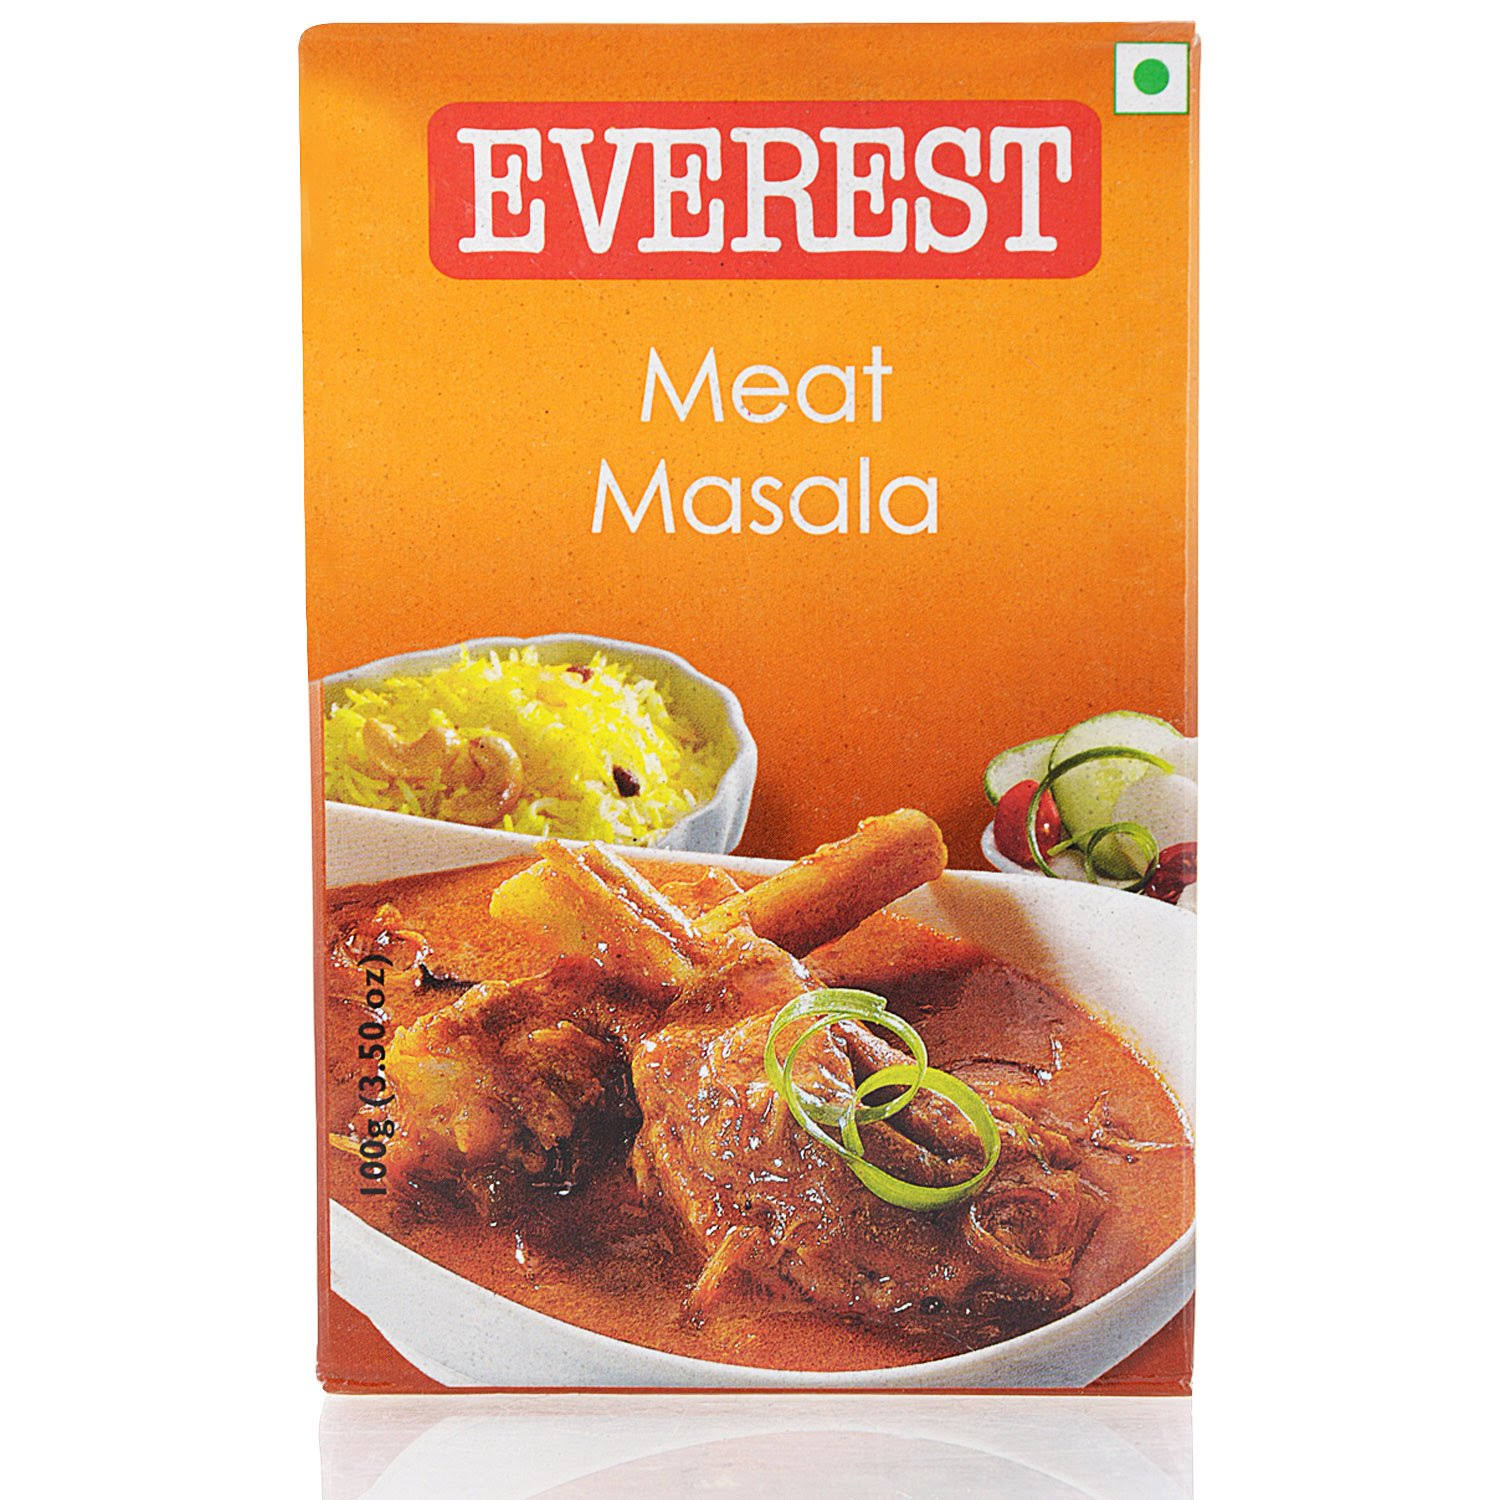 Everest Meat Masala Spice Mix